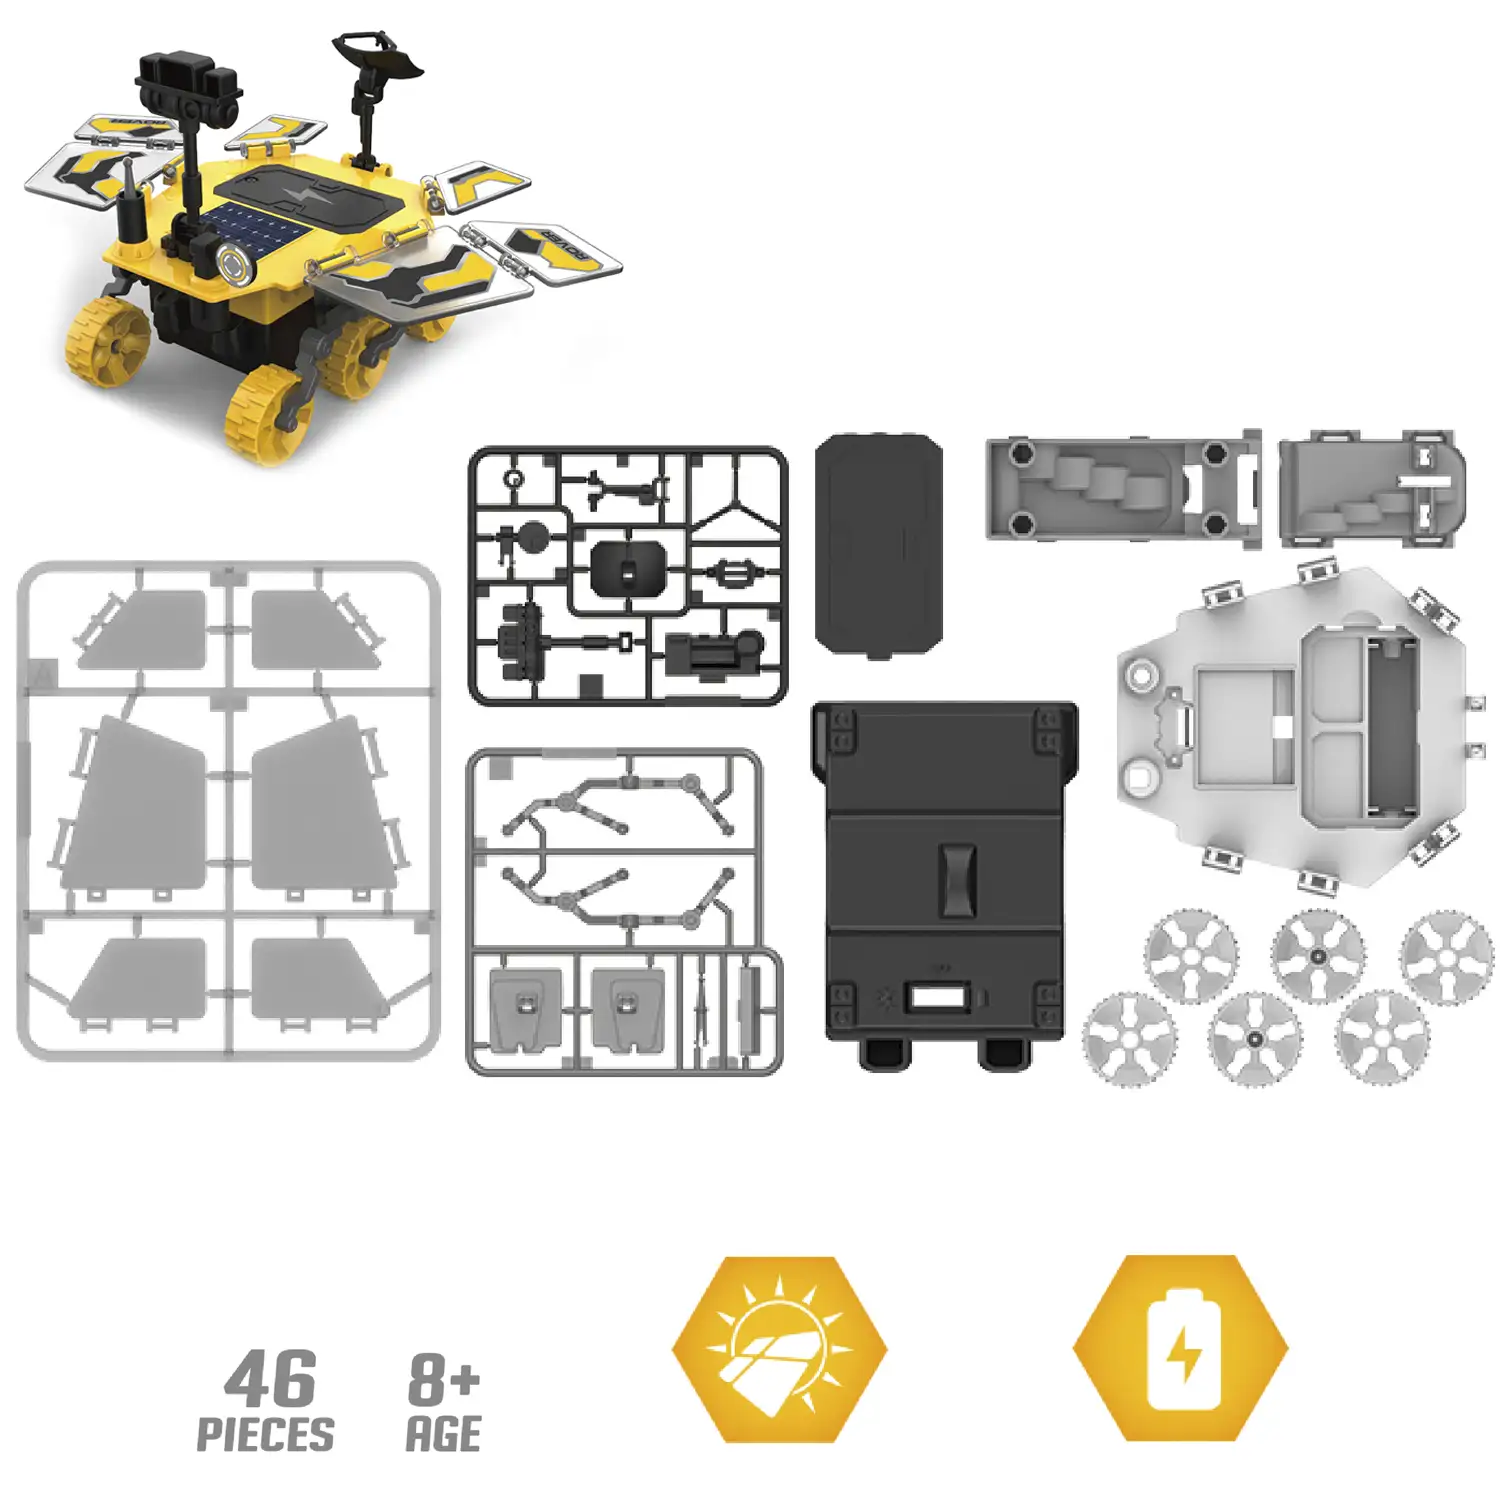 Rover de Marte para construir. 46 piezas. Funcionamiento solar y por batería.